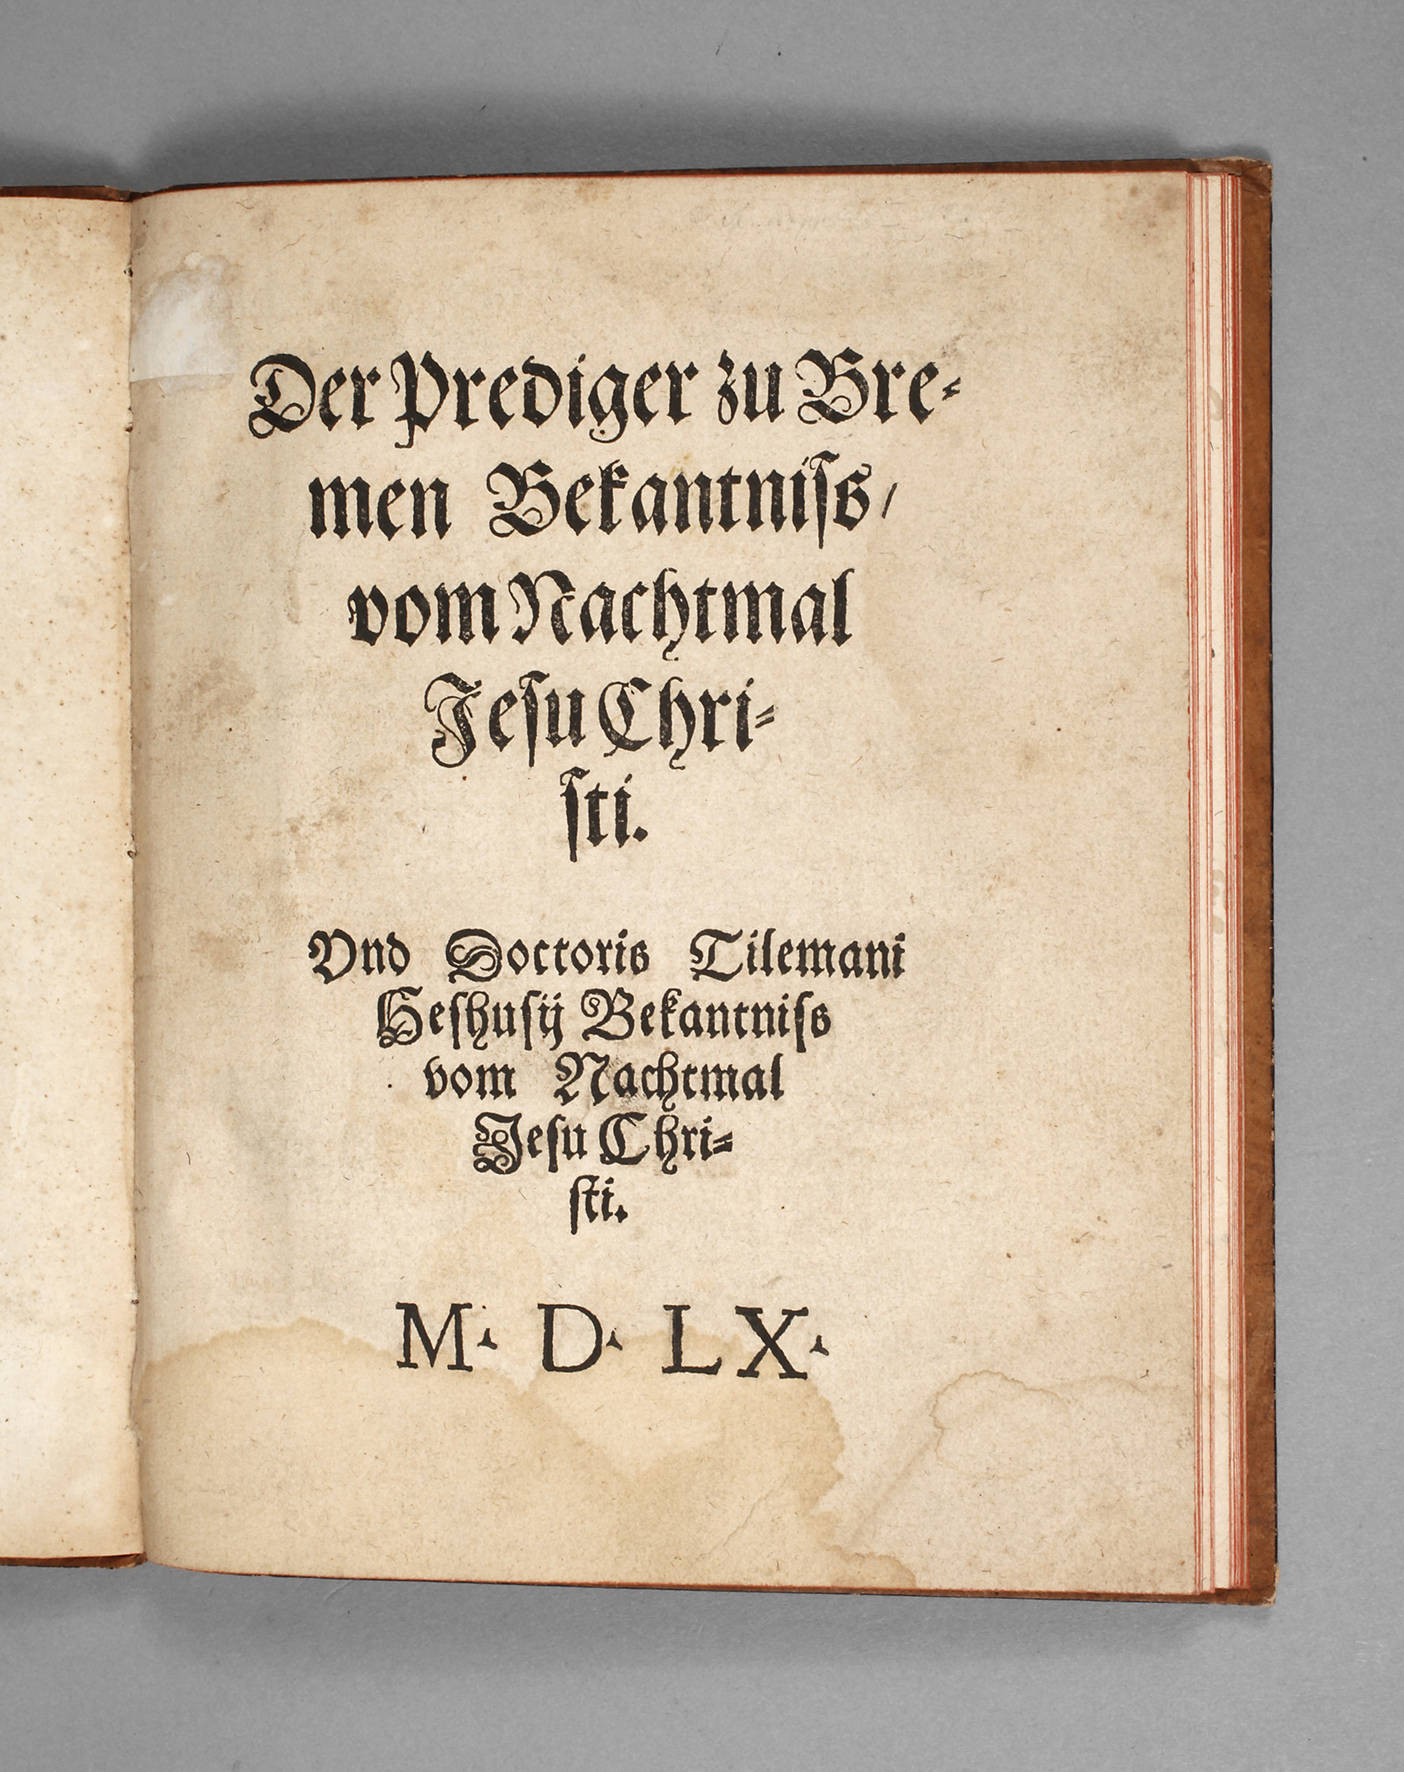 Tilemanns Predigtenbüchlein 1560